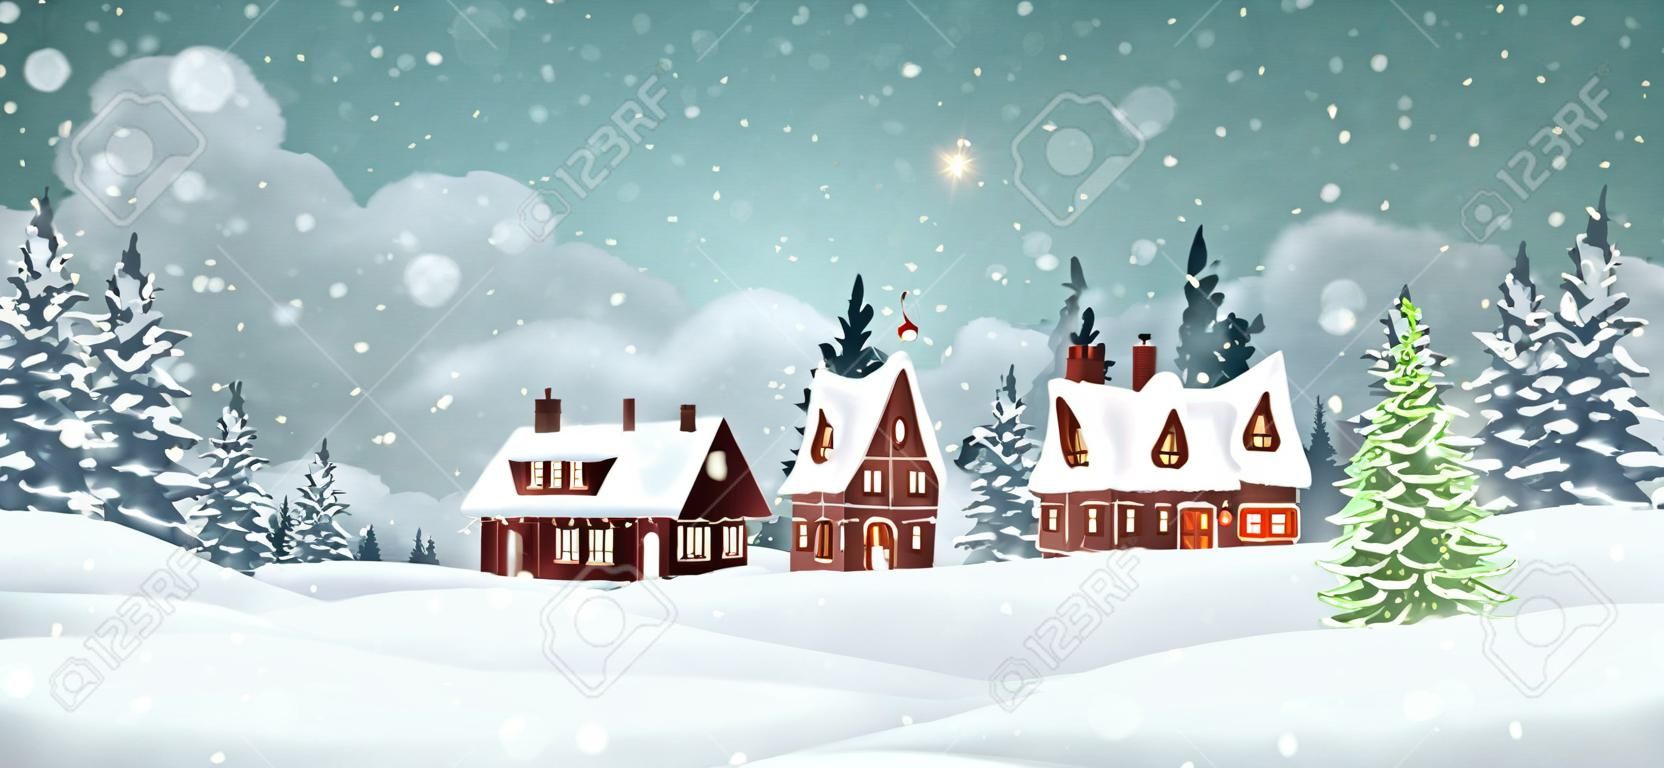 Casas de pueblo de Navidad con bosque de pinos de invierno. Ilustración de vector de vacaciones de Navidad